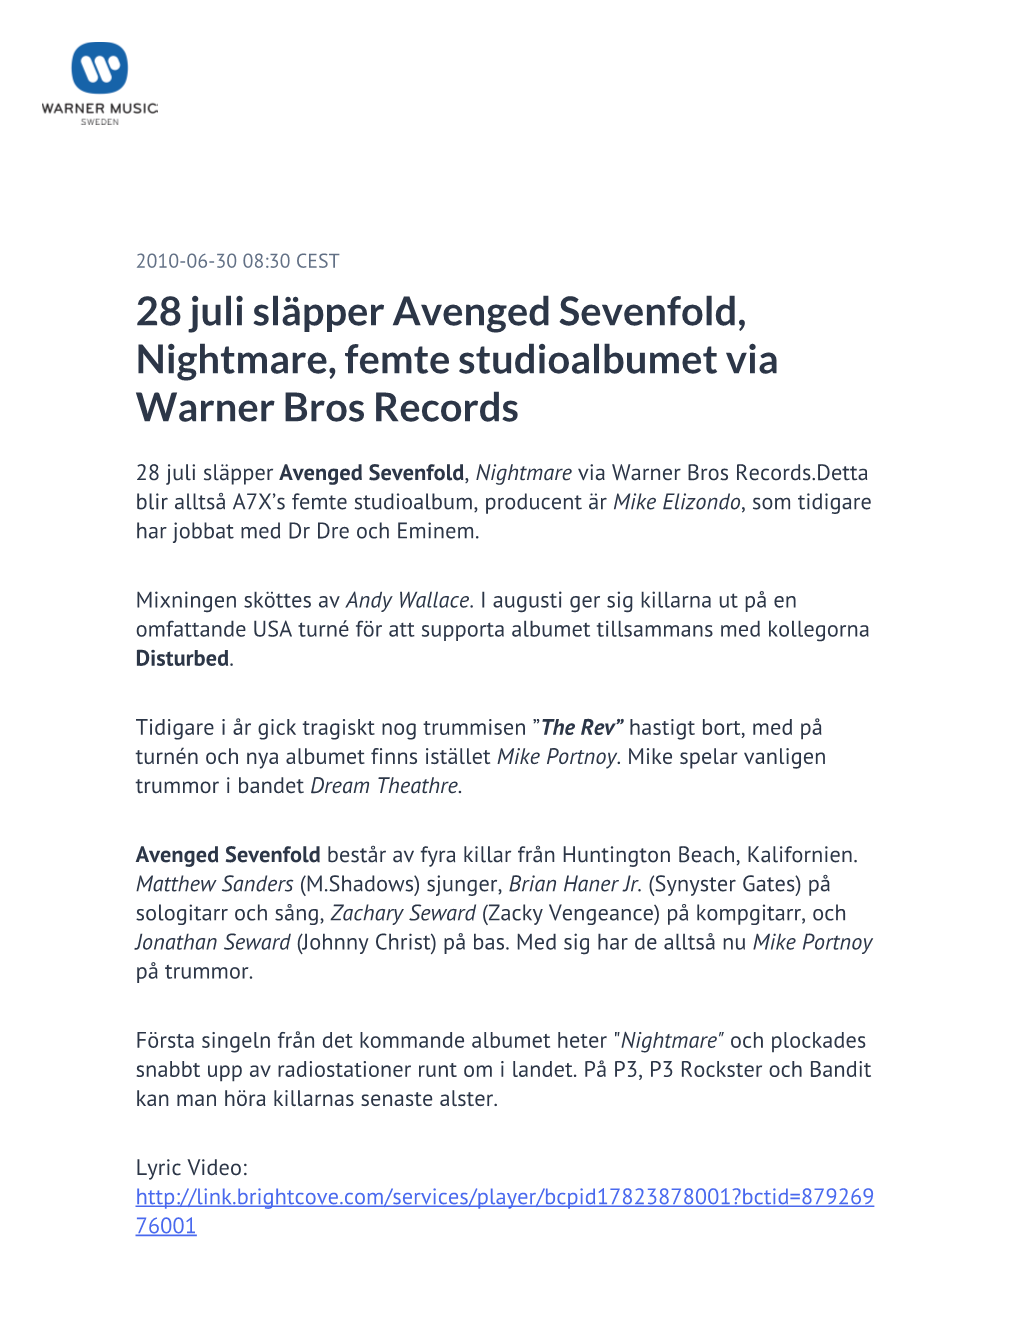 28 Juli Släpper Avenged Sevenfold, Nightmare, Femte Studioalbumet Via Warner Bros Records